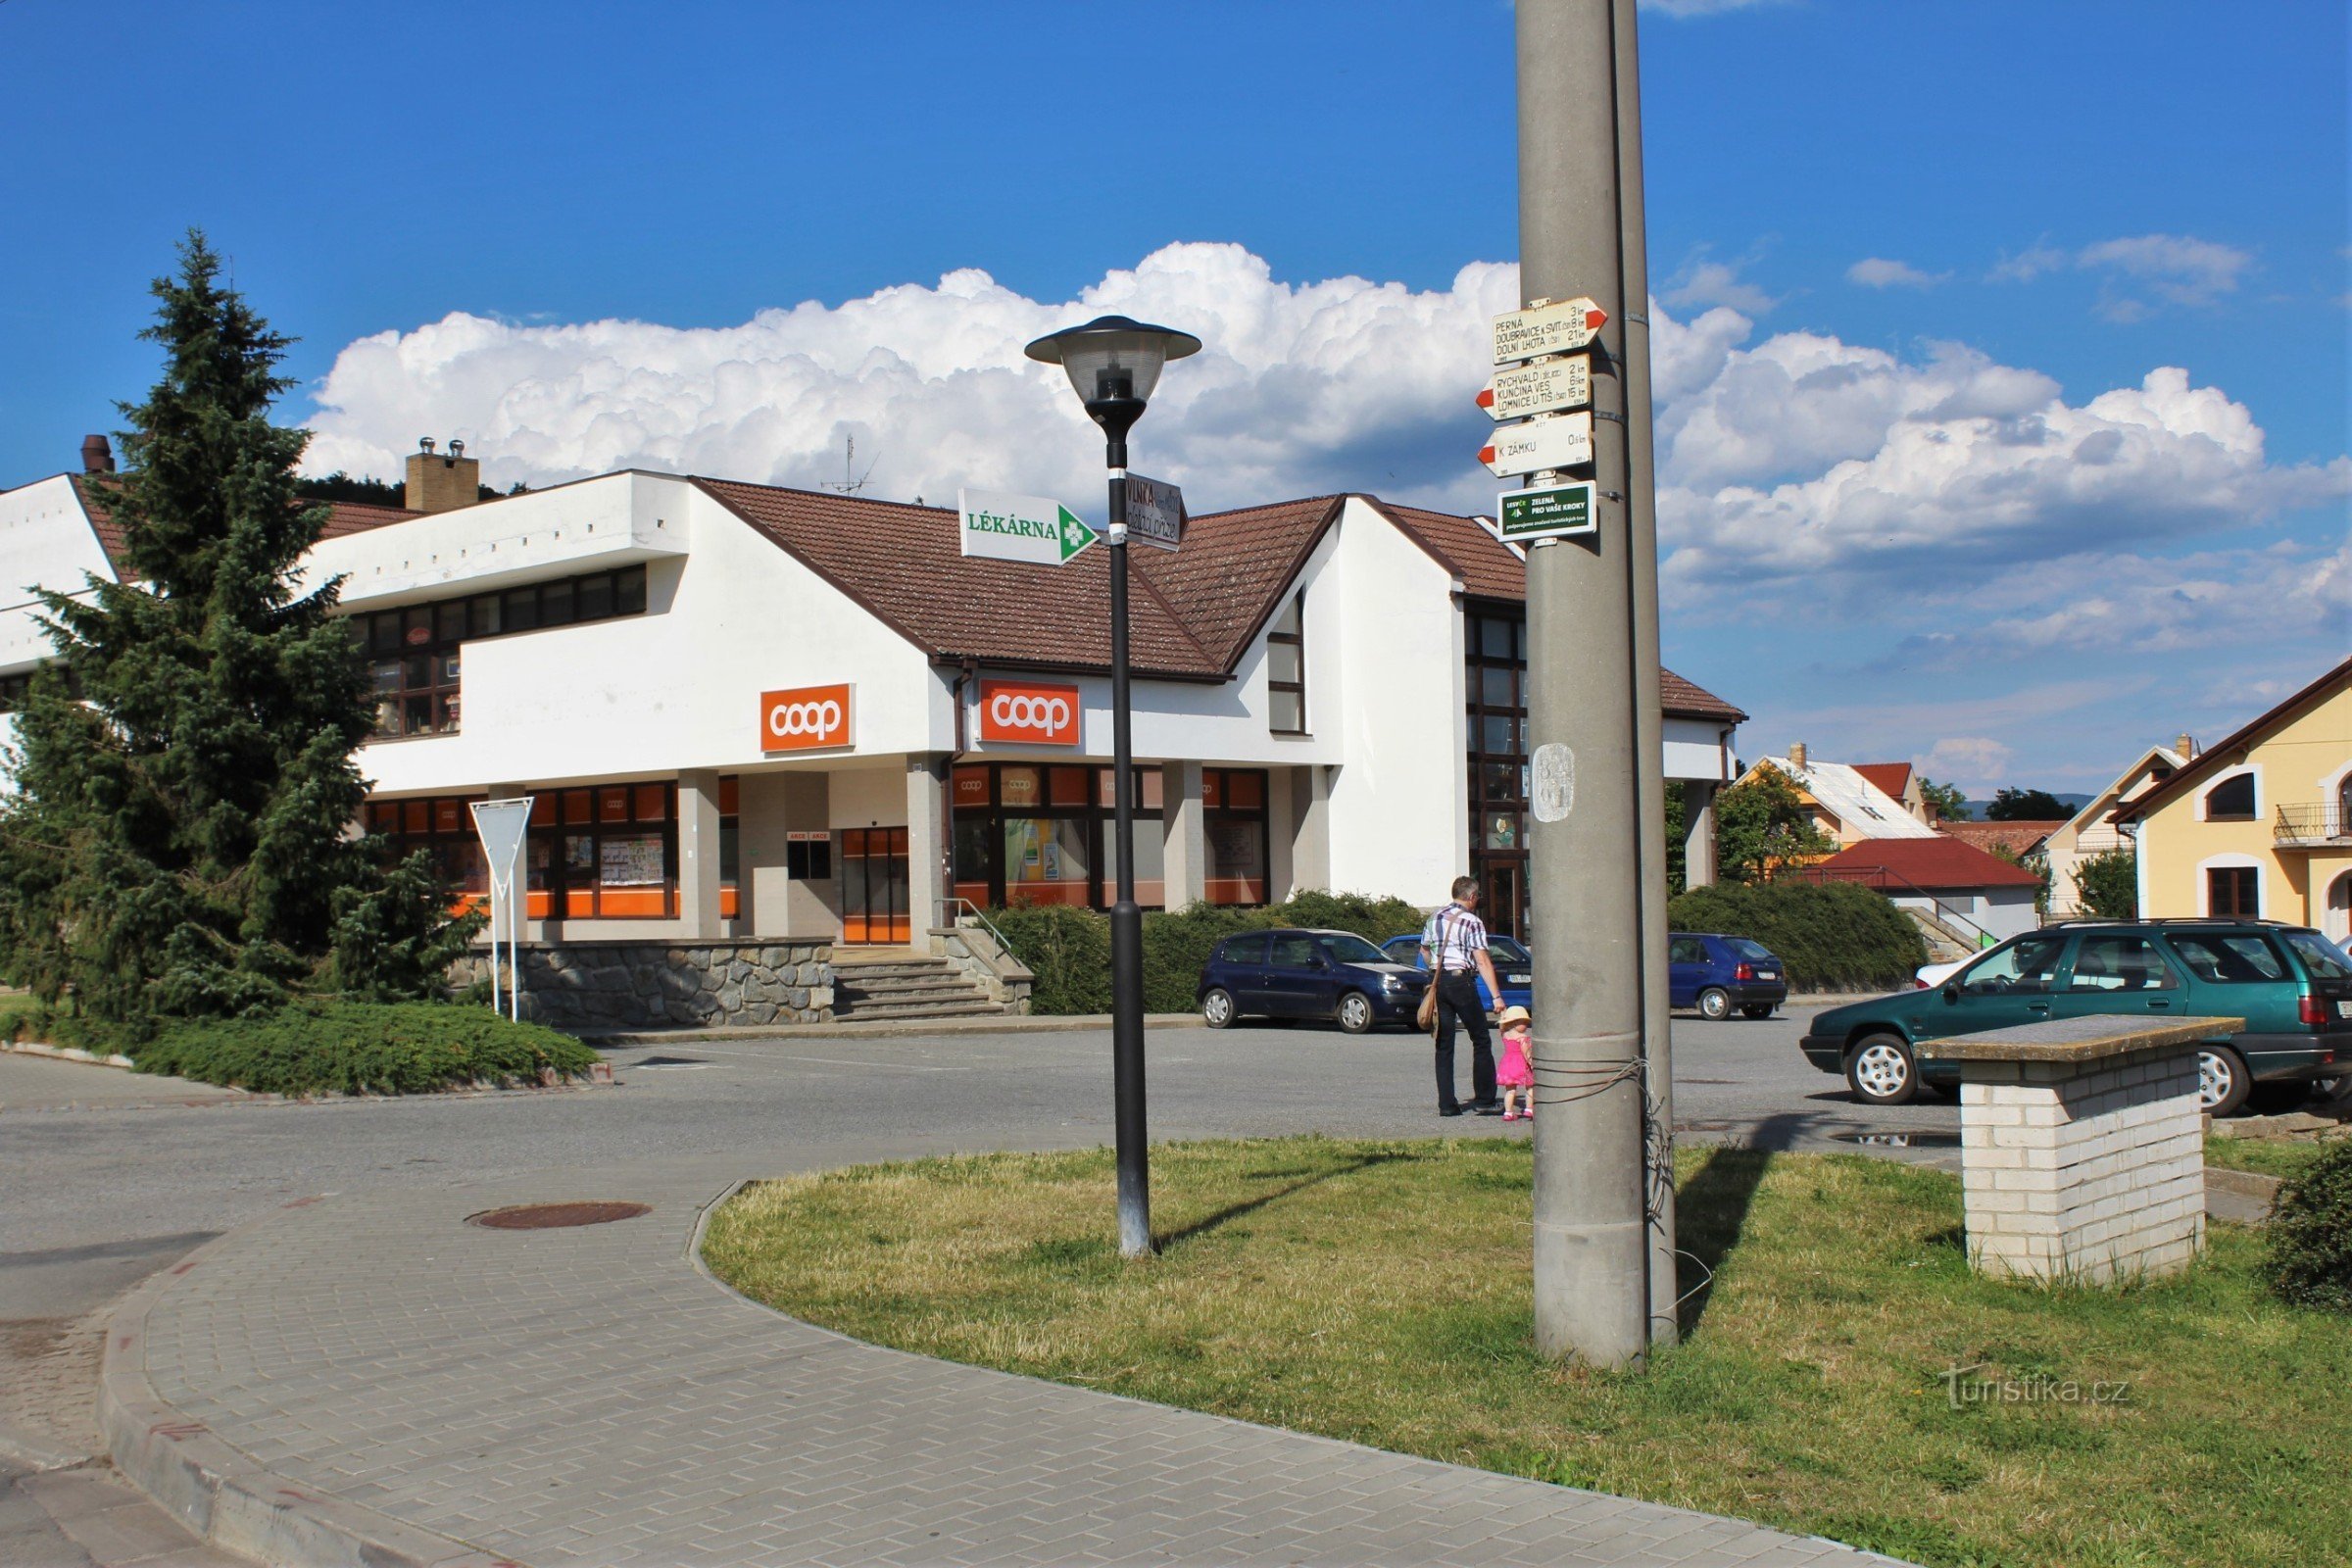 O cruzamento turístico está localizado em Comenské náměstí